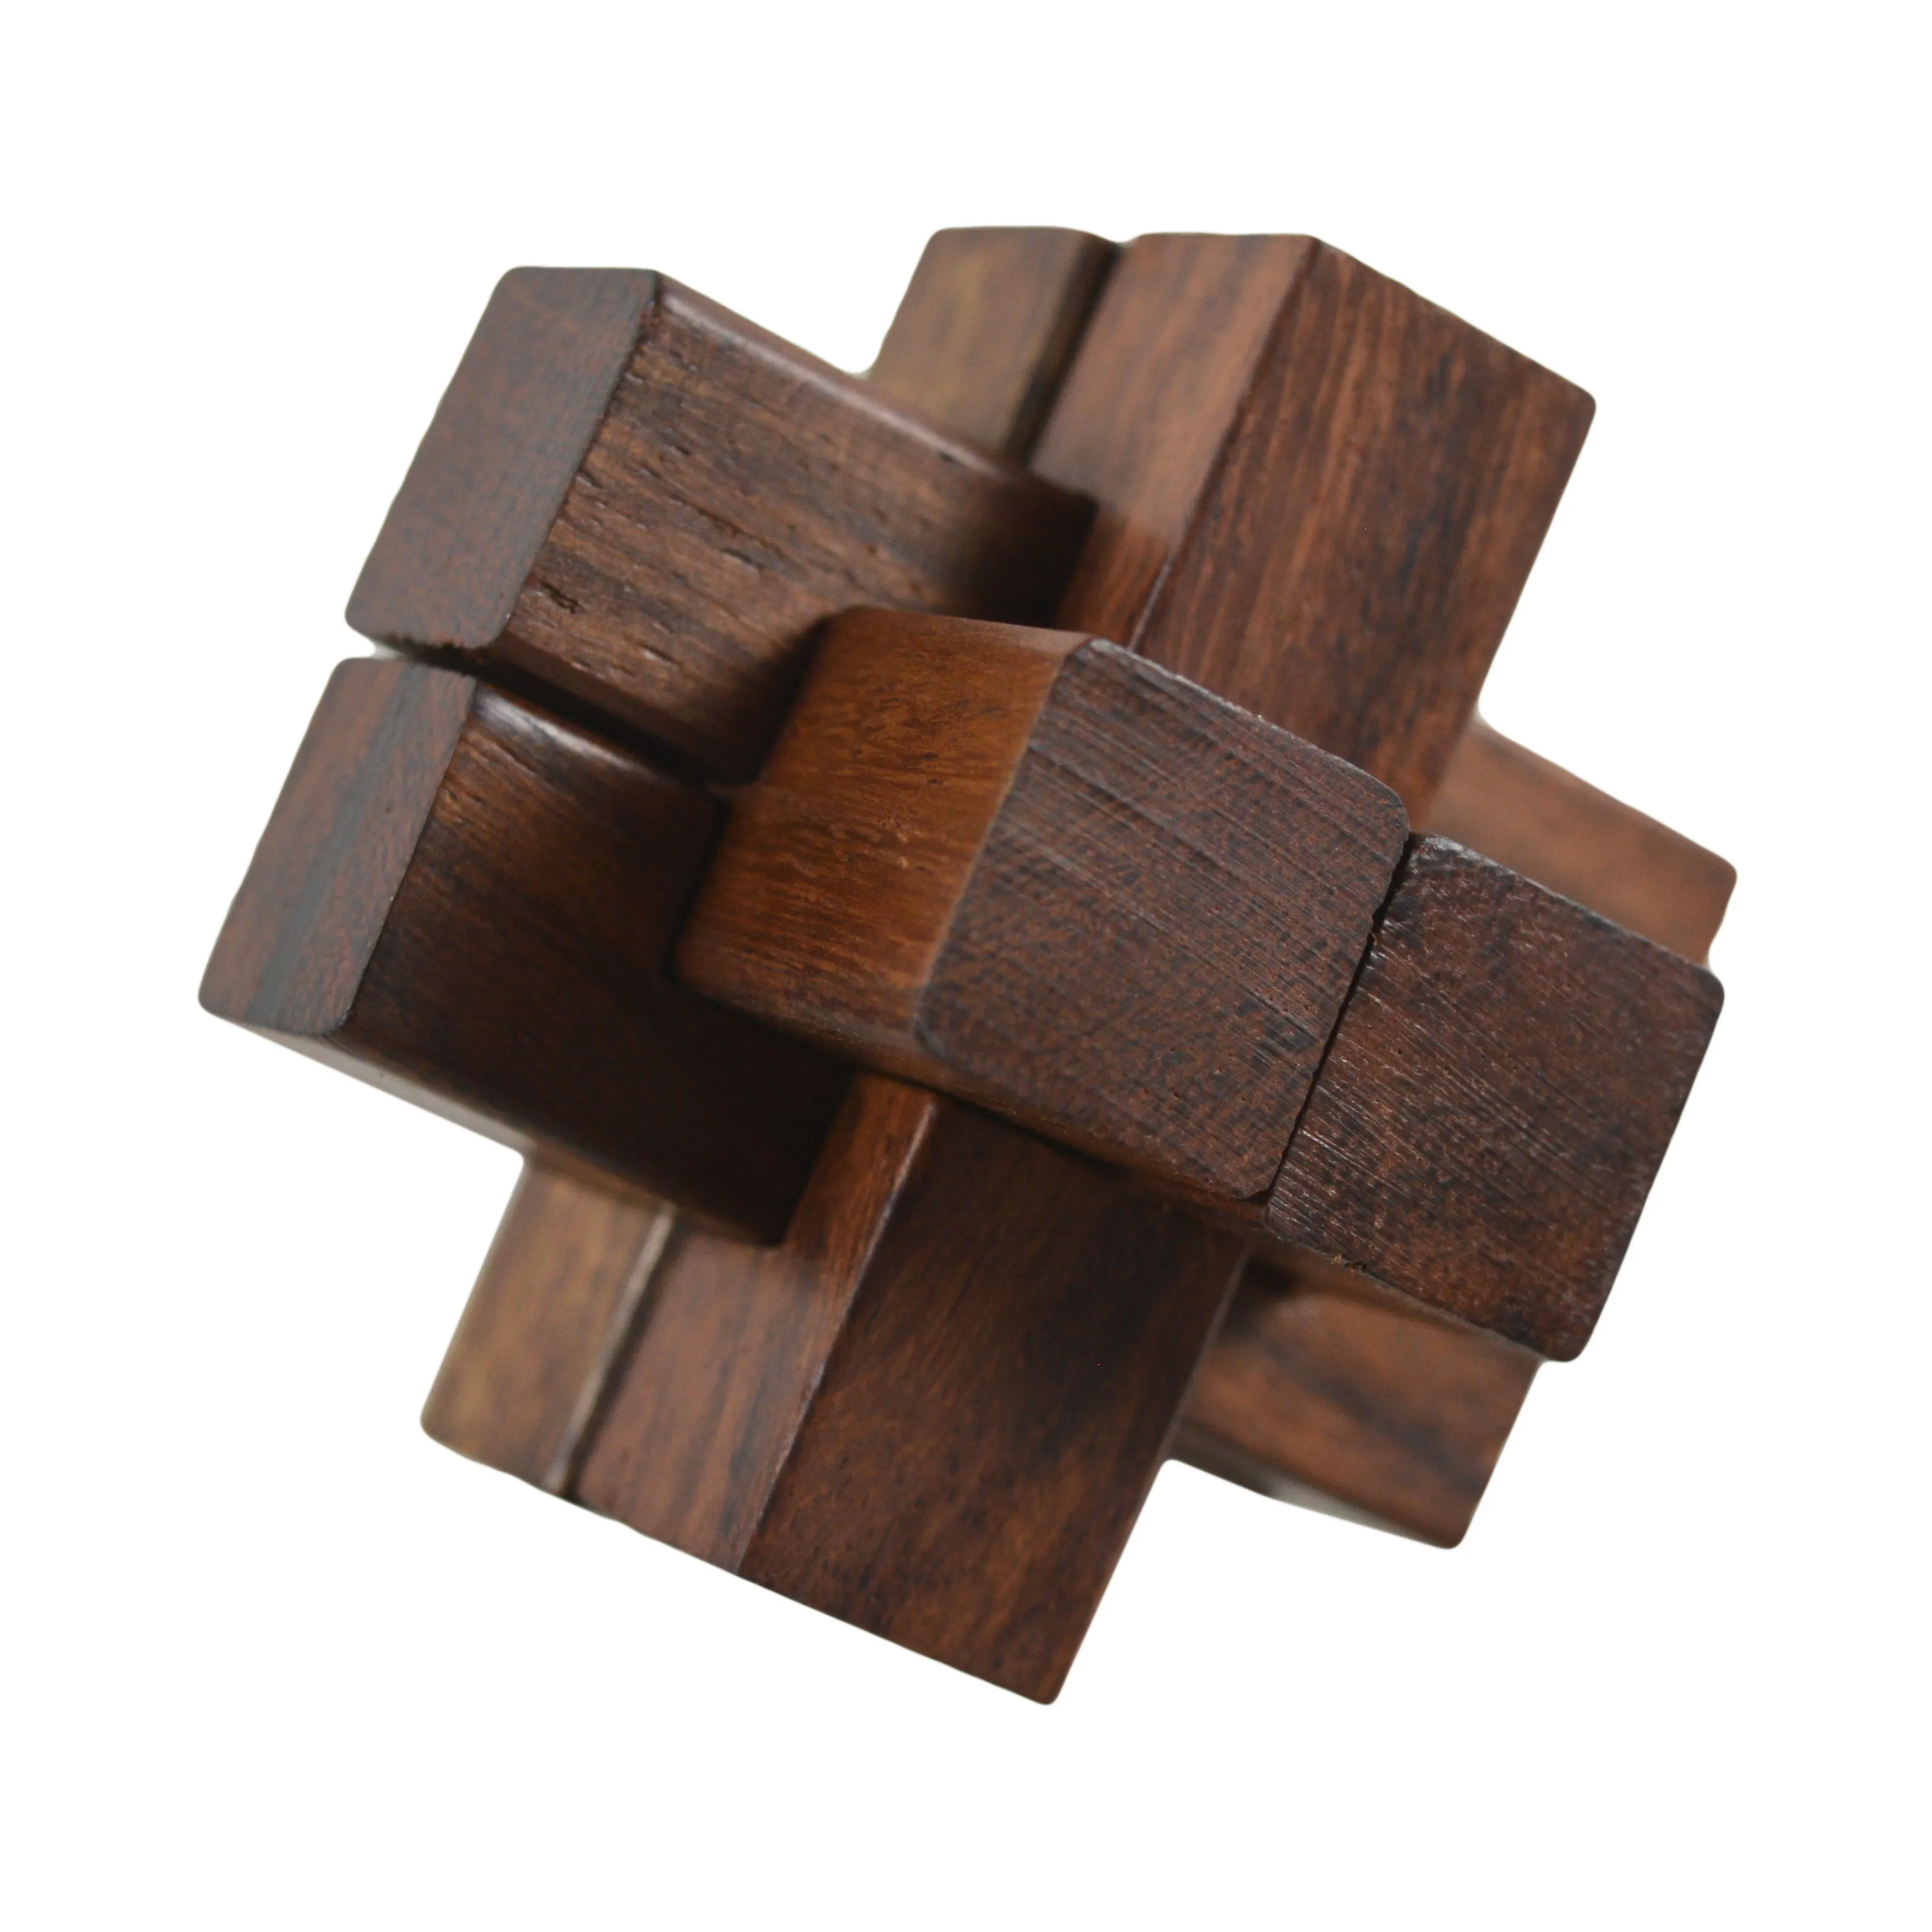 Очень типичная элегантная деревянная игра, лучшая отделка и дизайн из натурального материала, деревянные игрушки, лучшие деревянные игры